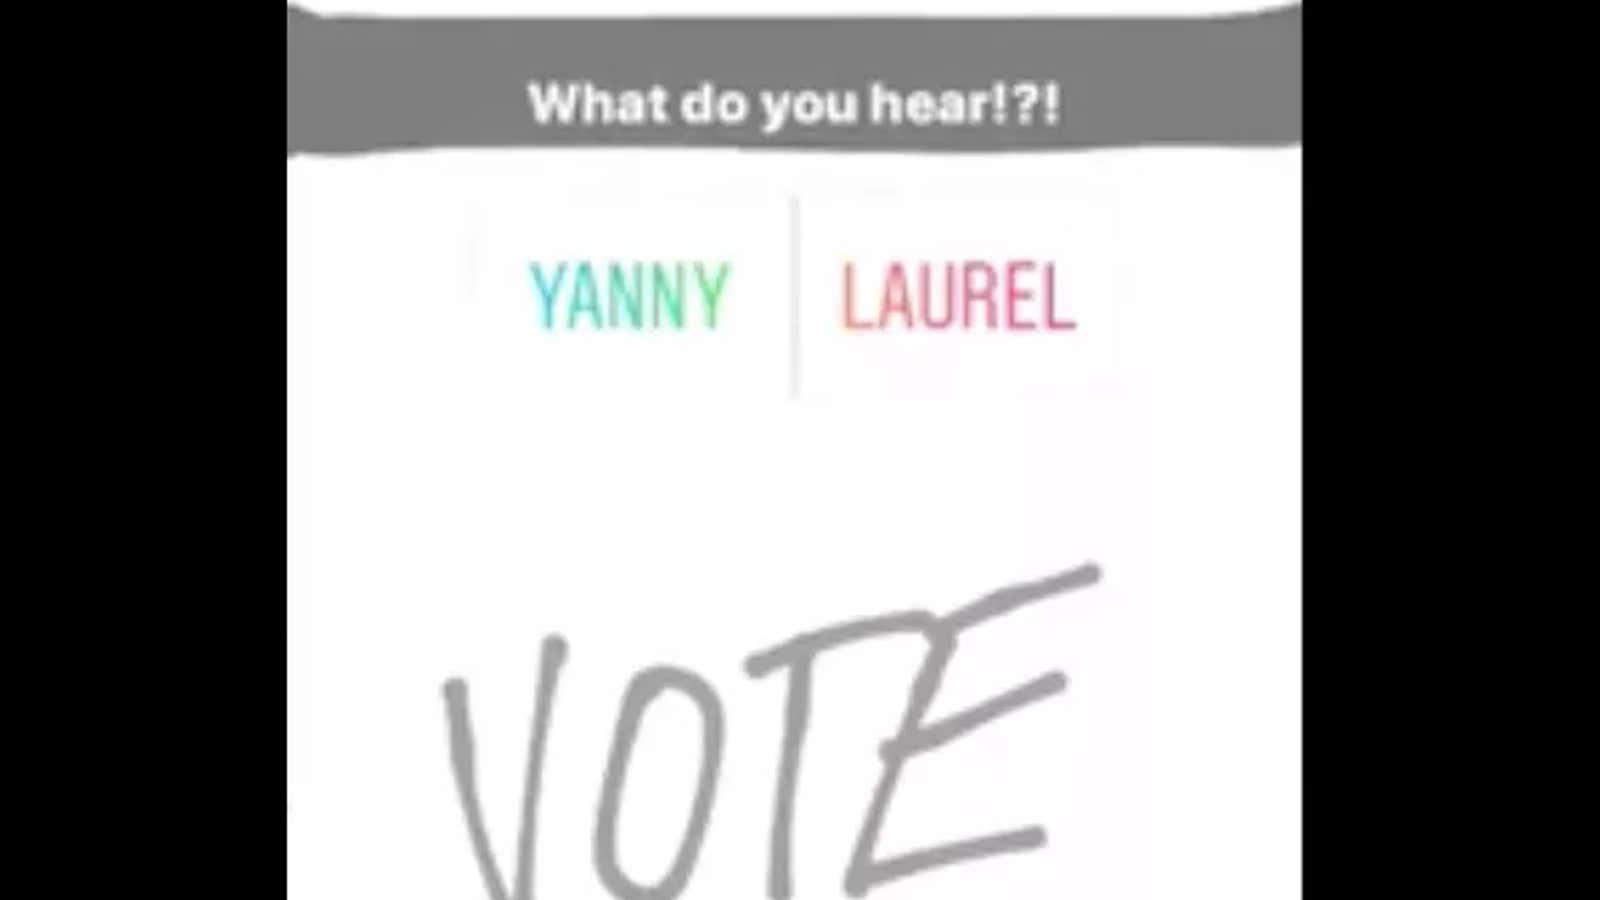 Listen up, Team Laurel